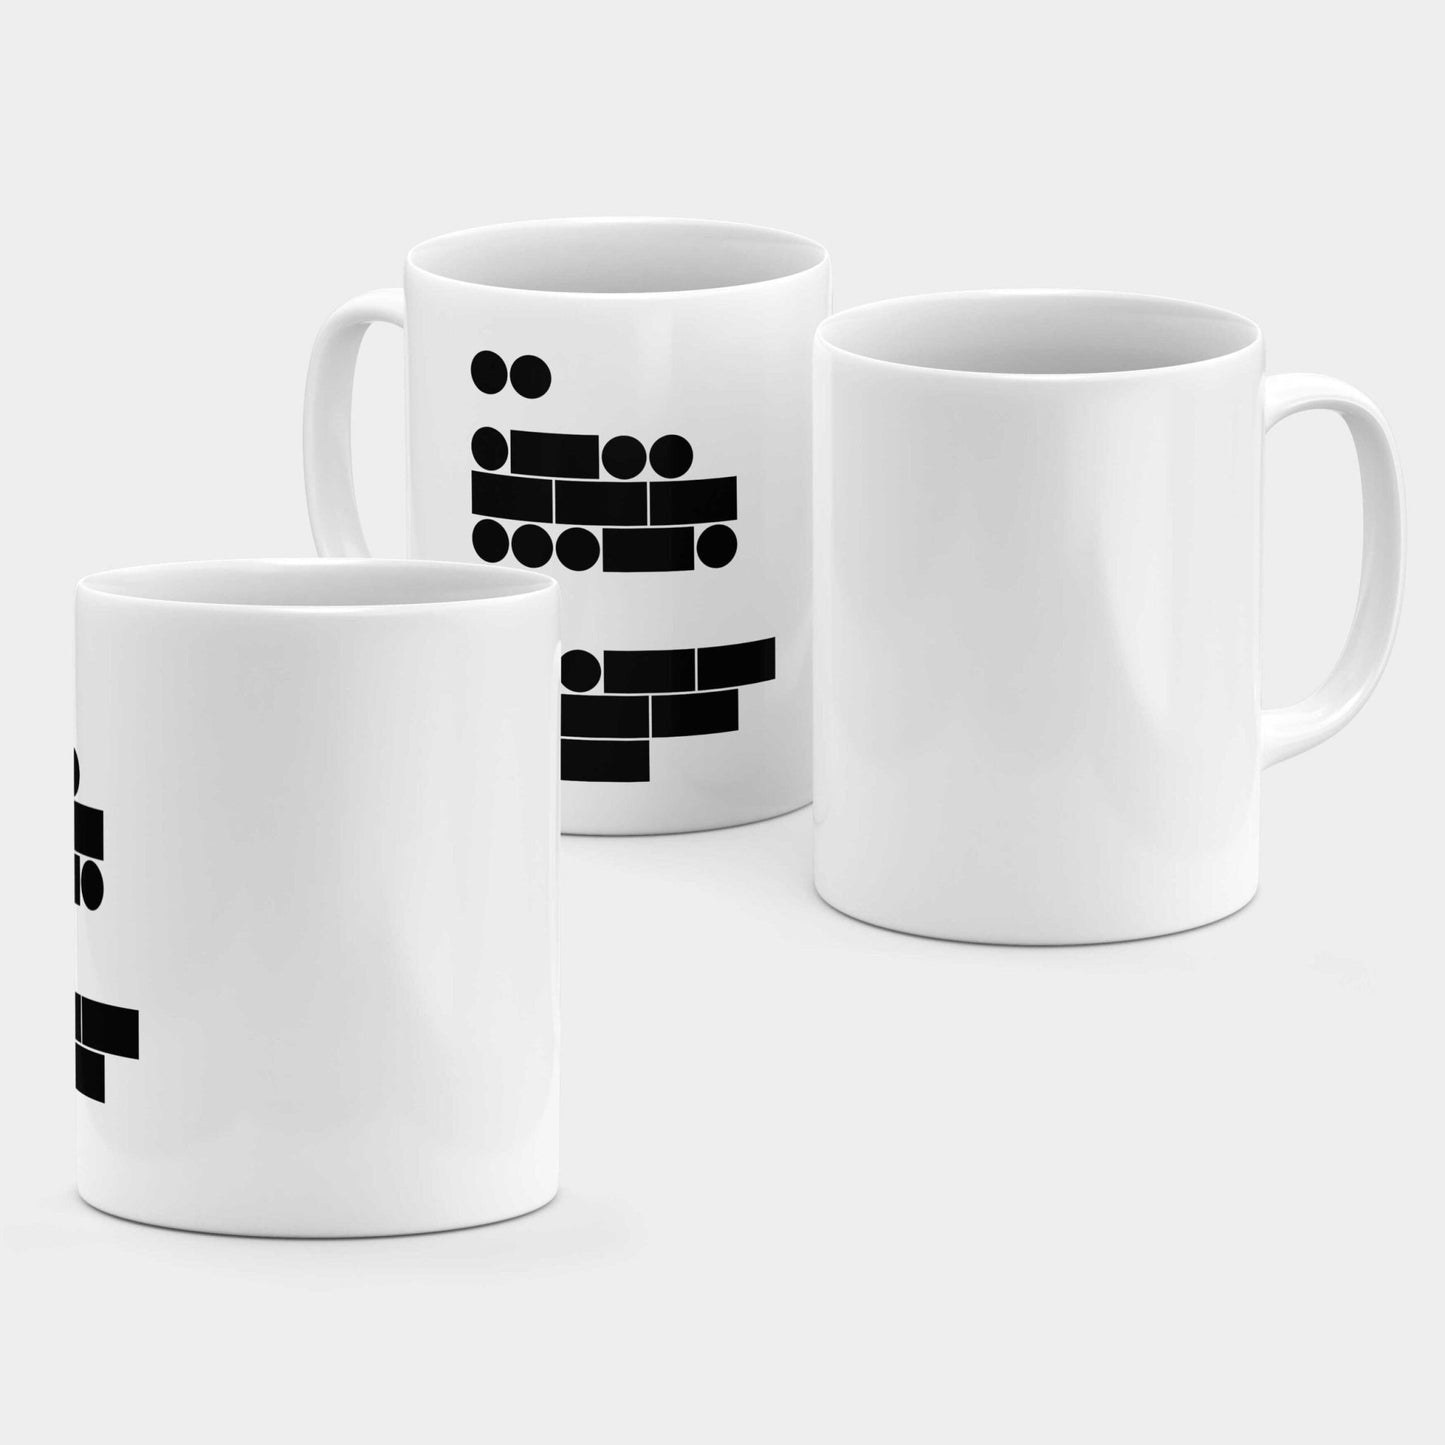 Morse Code I Love You 11 Oz Mug The Design Craft